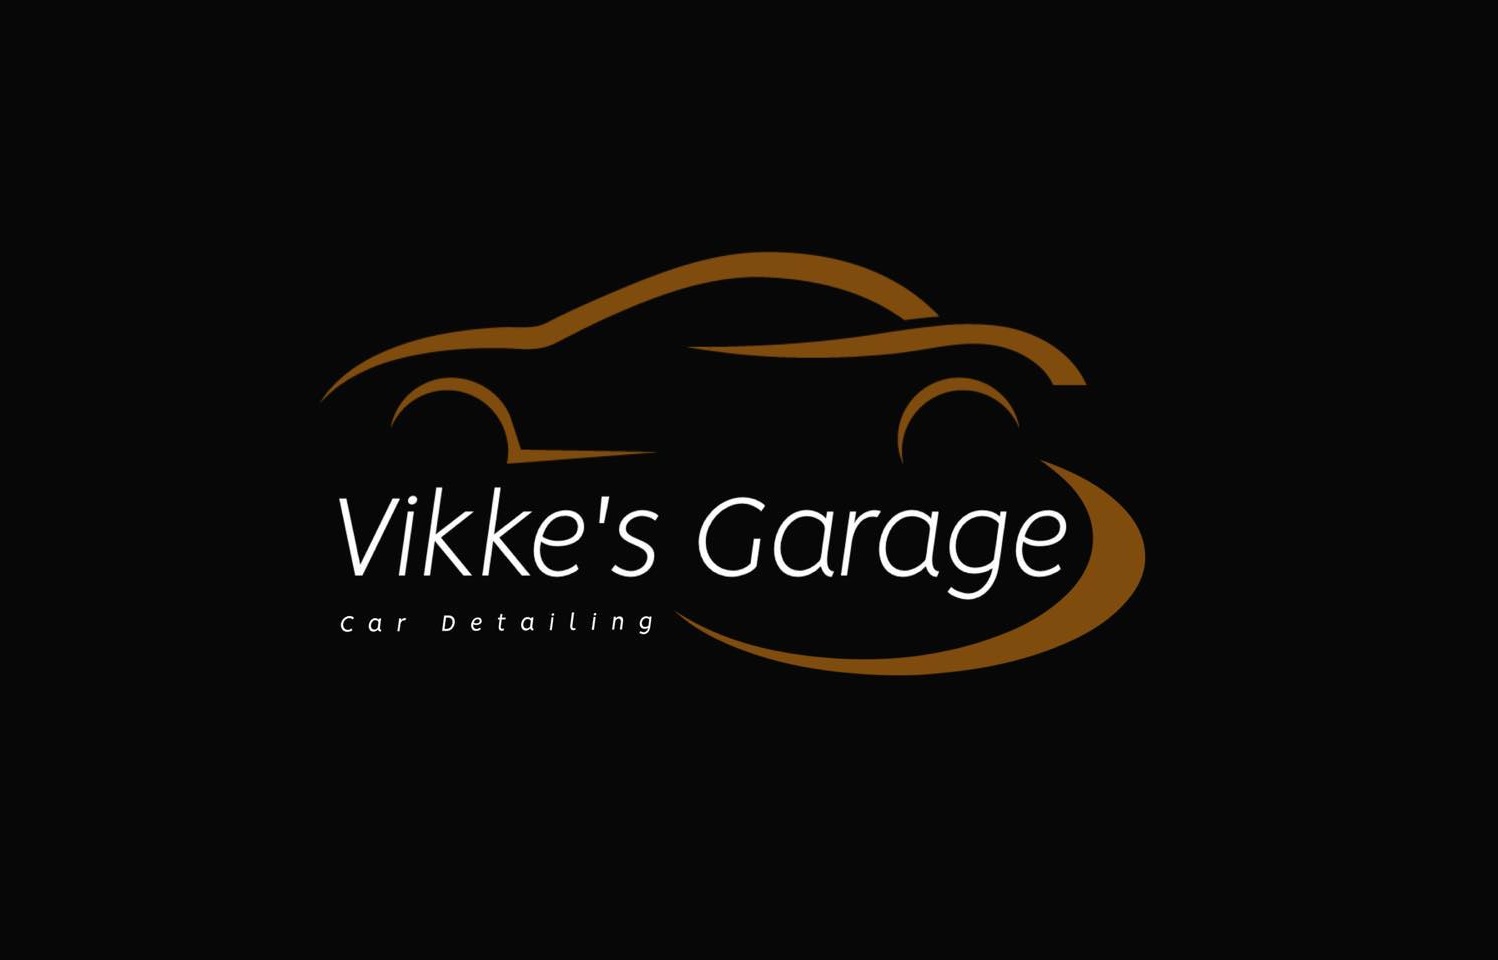 Vikke's Garage